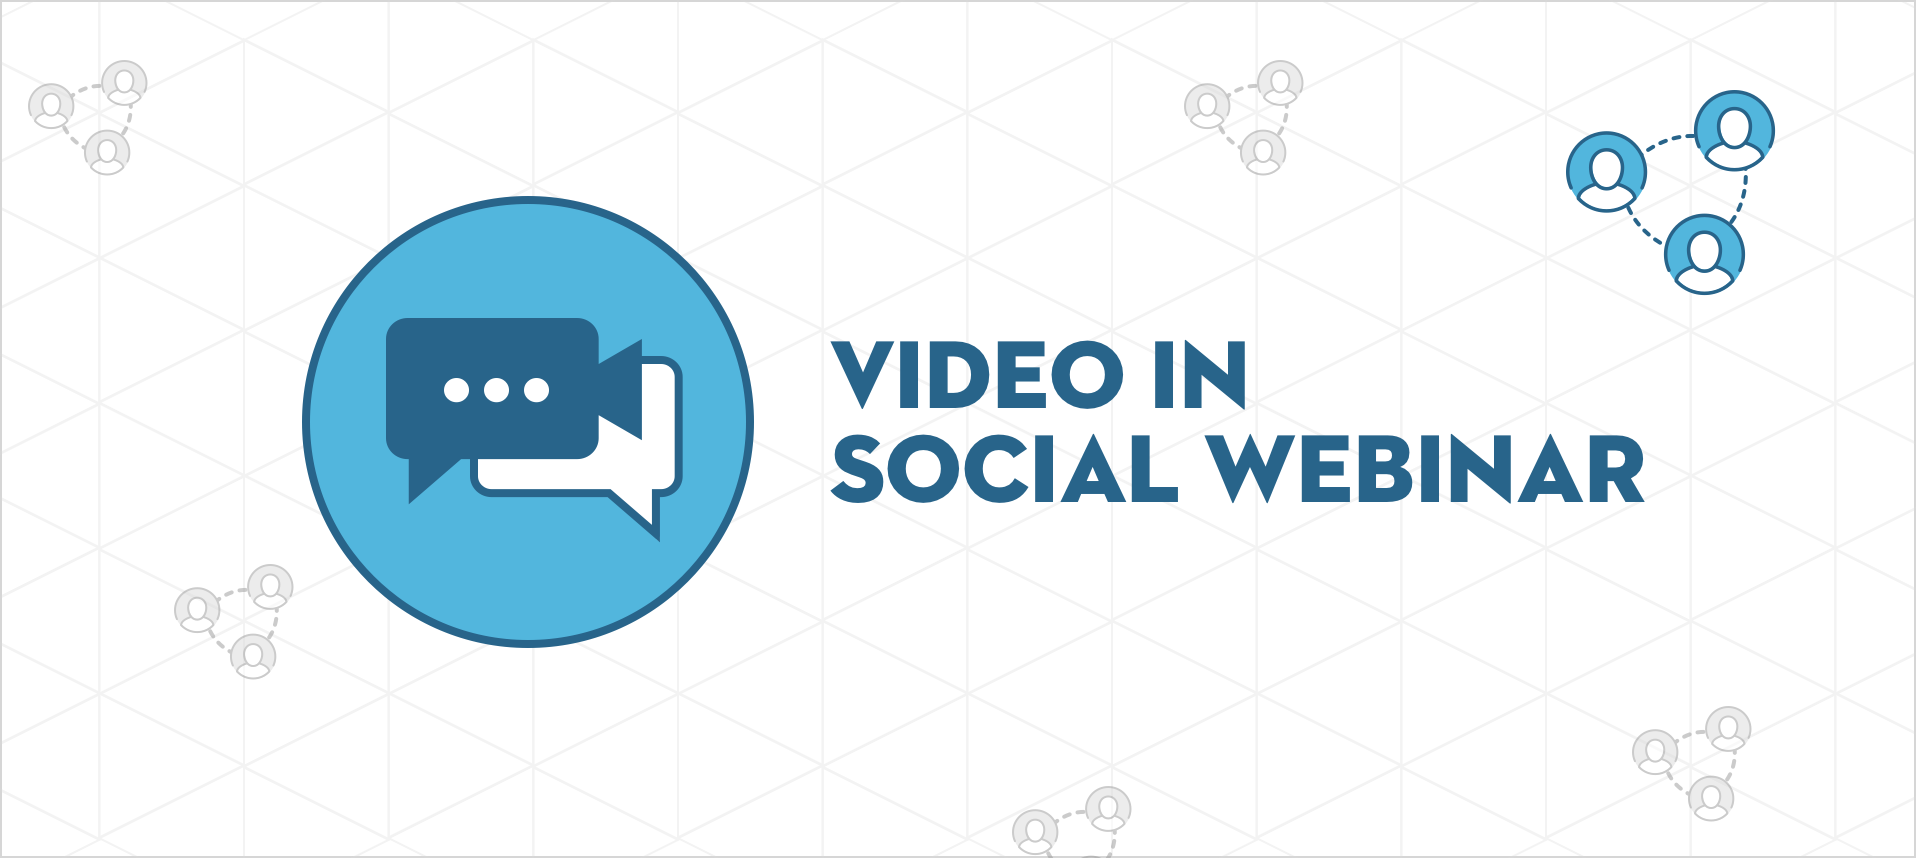 Introducing Video Conferencing in Social Webinar